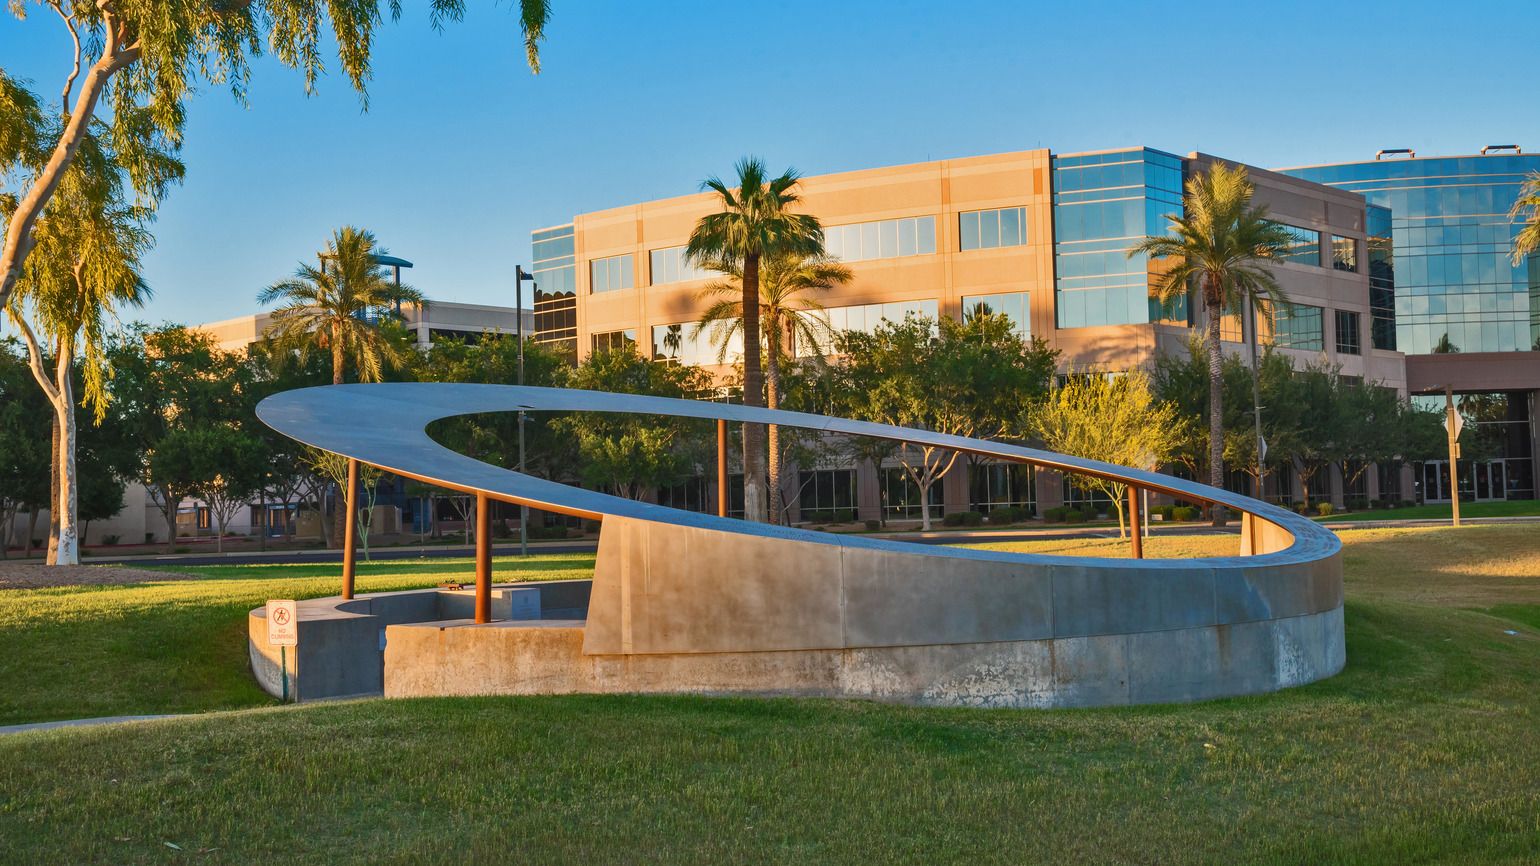 9-11 Memorial at Wesley Bolin Memorial Plaza in Phoenix, Arizona (Alamy)